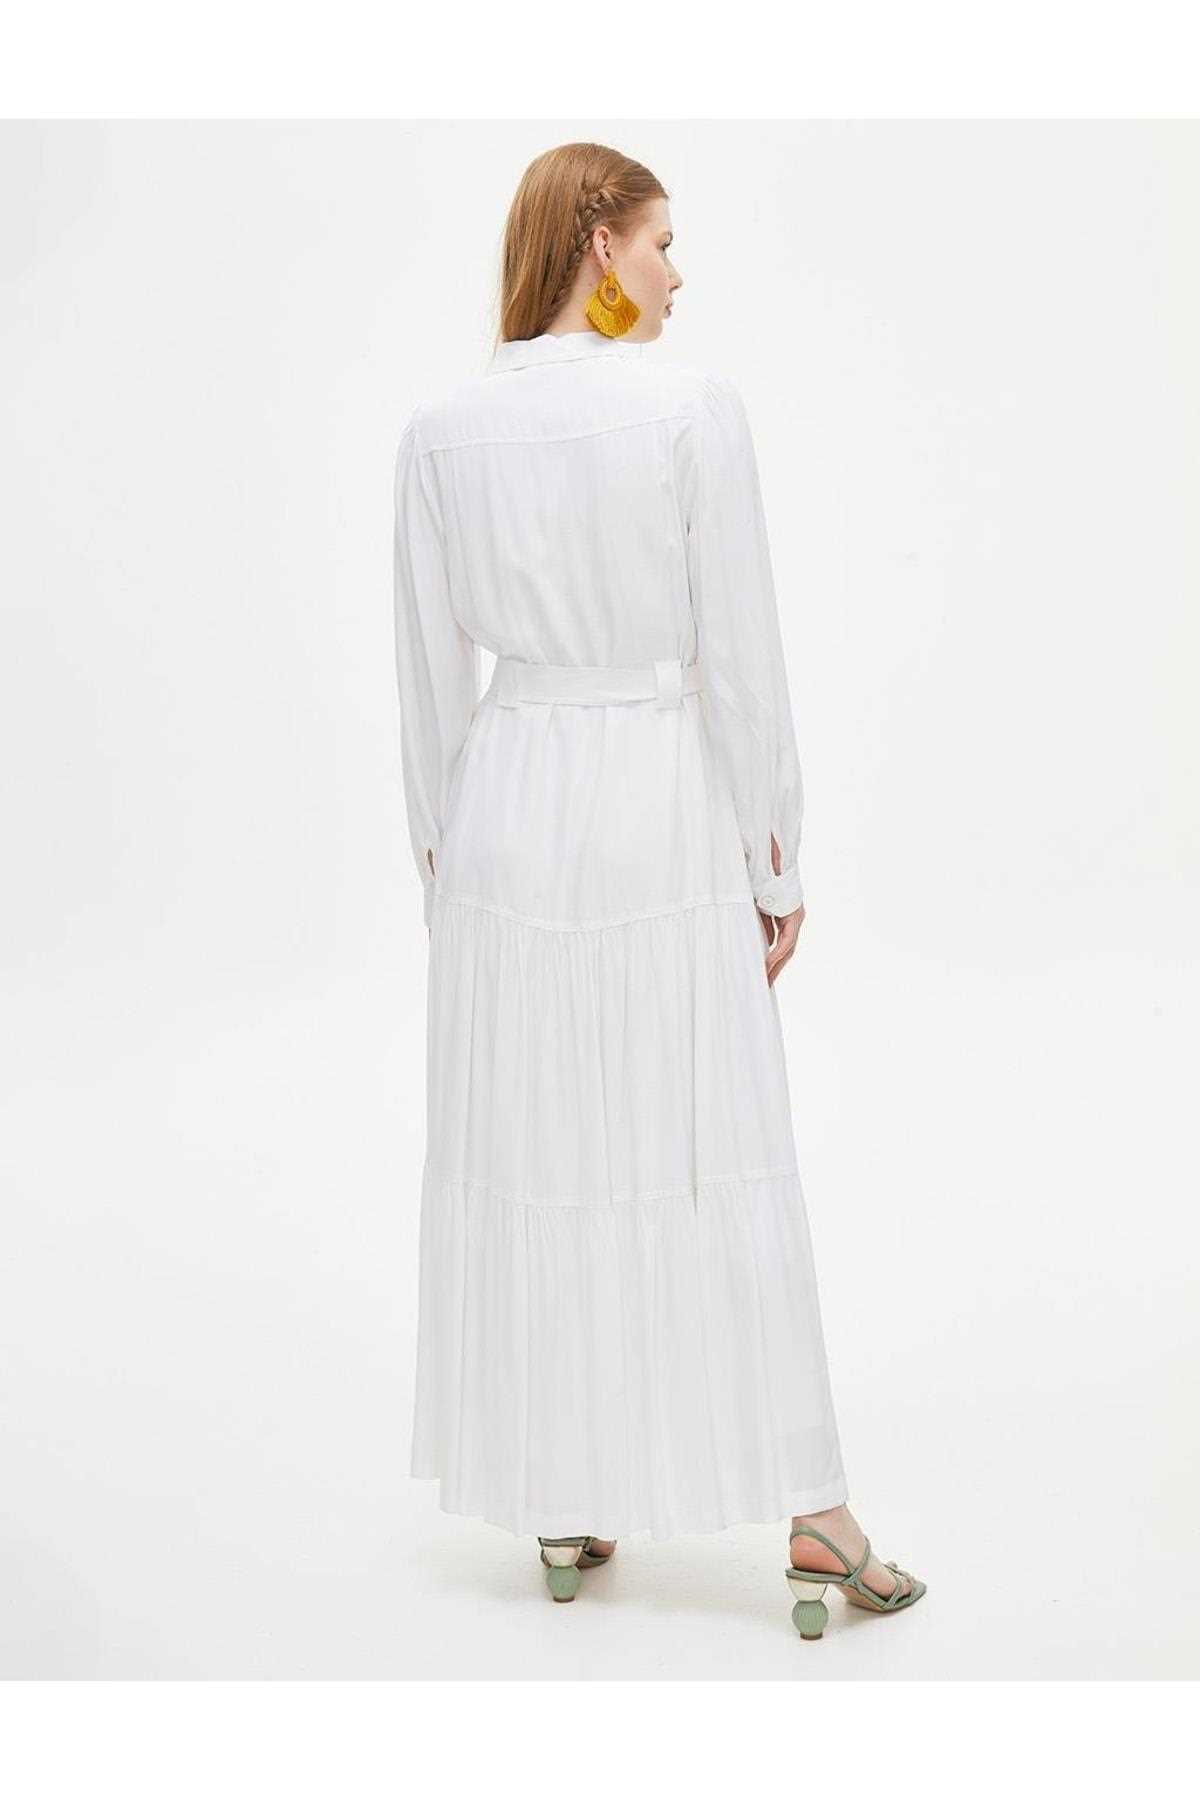 مدل پیراهن اسلامی زنانه برند کایرا رنگ سفید ty280048512